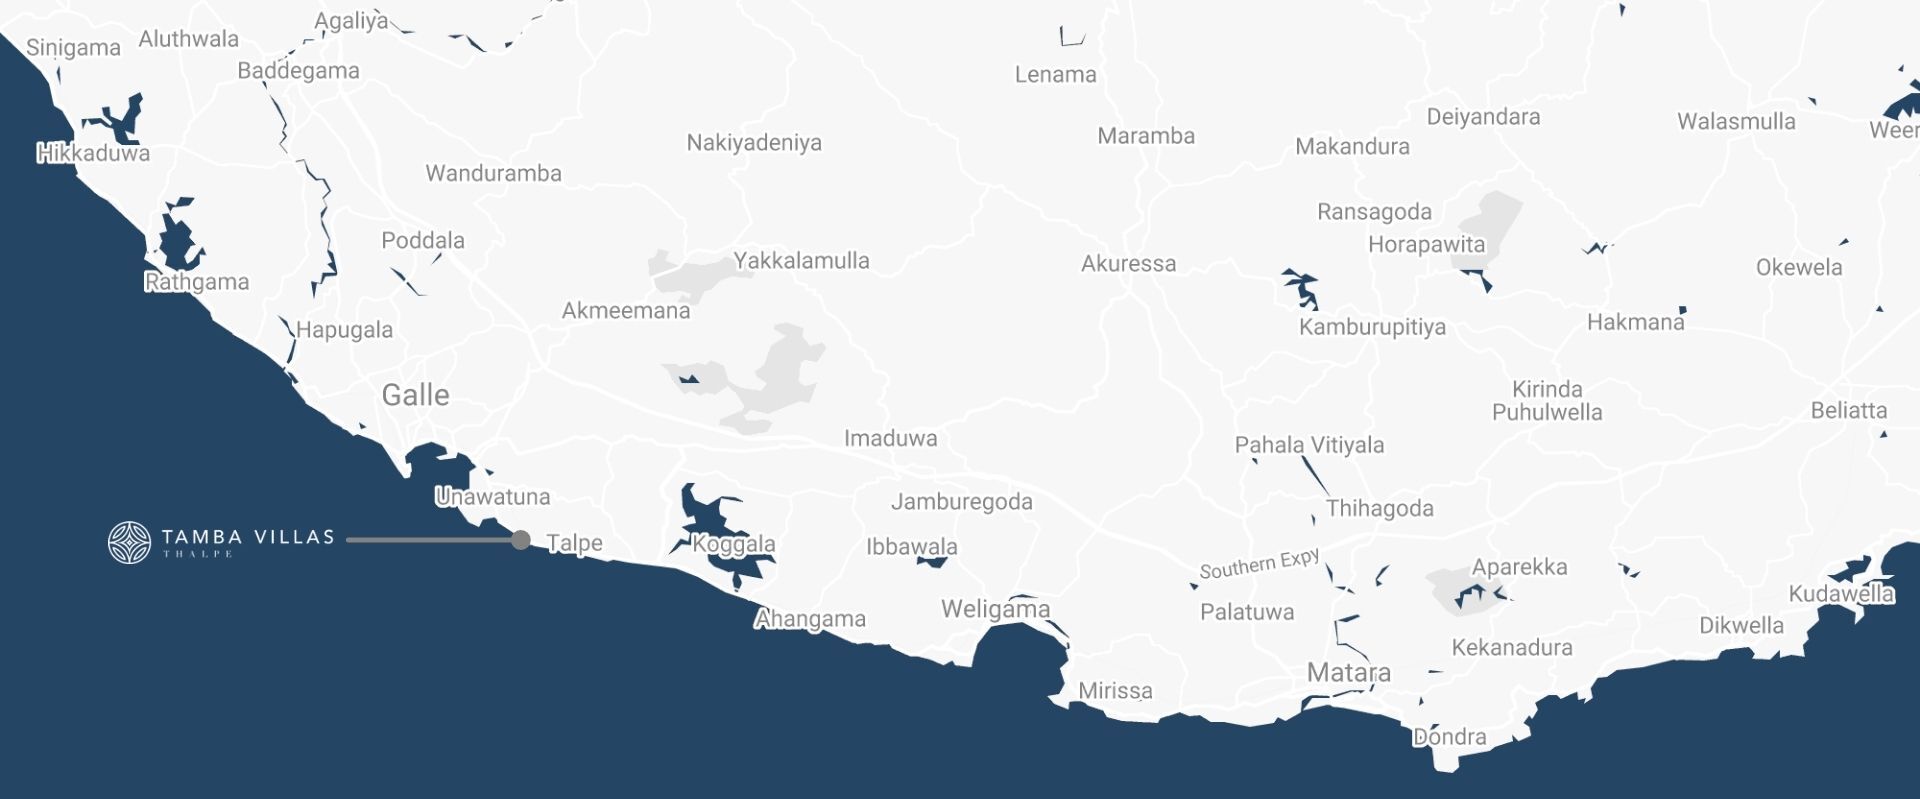 tamba villas location map